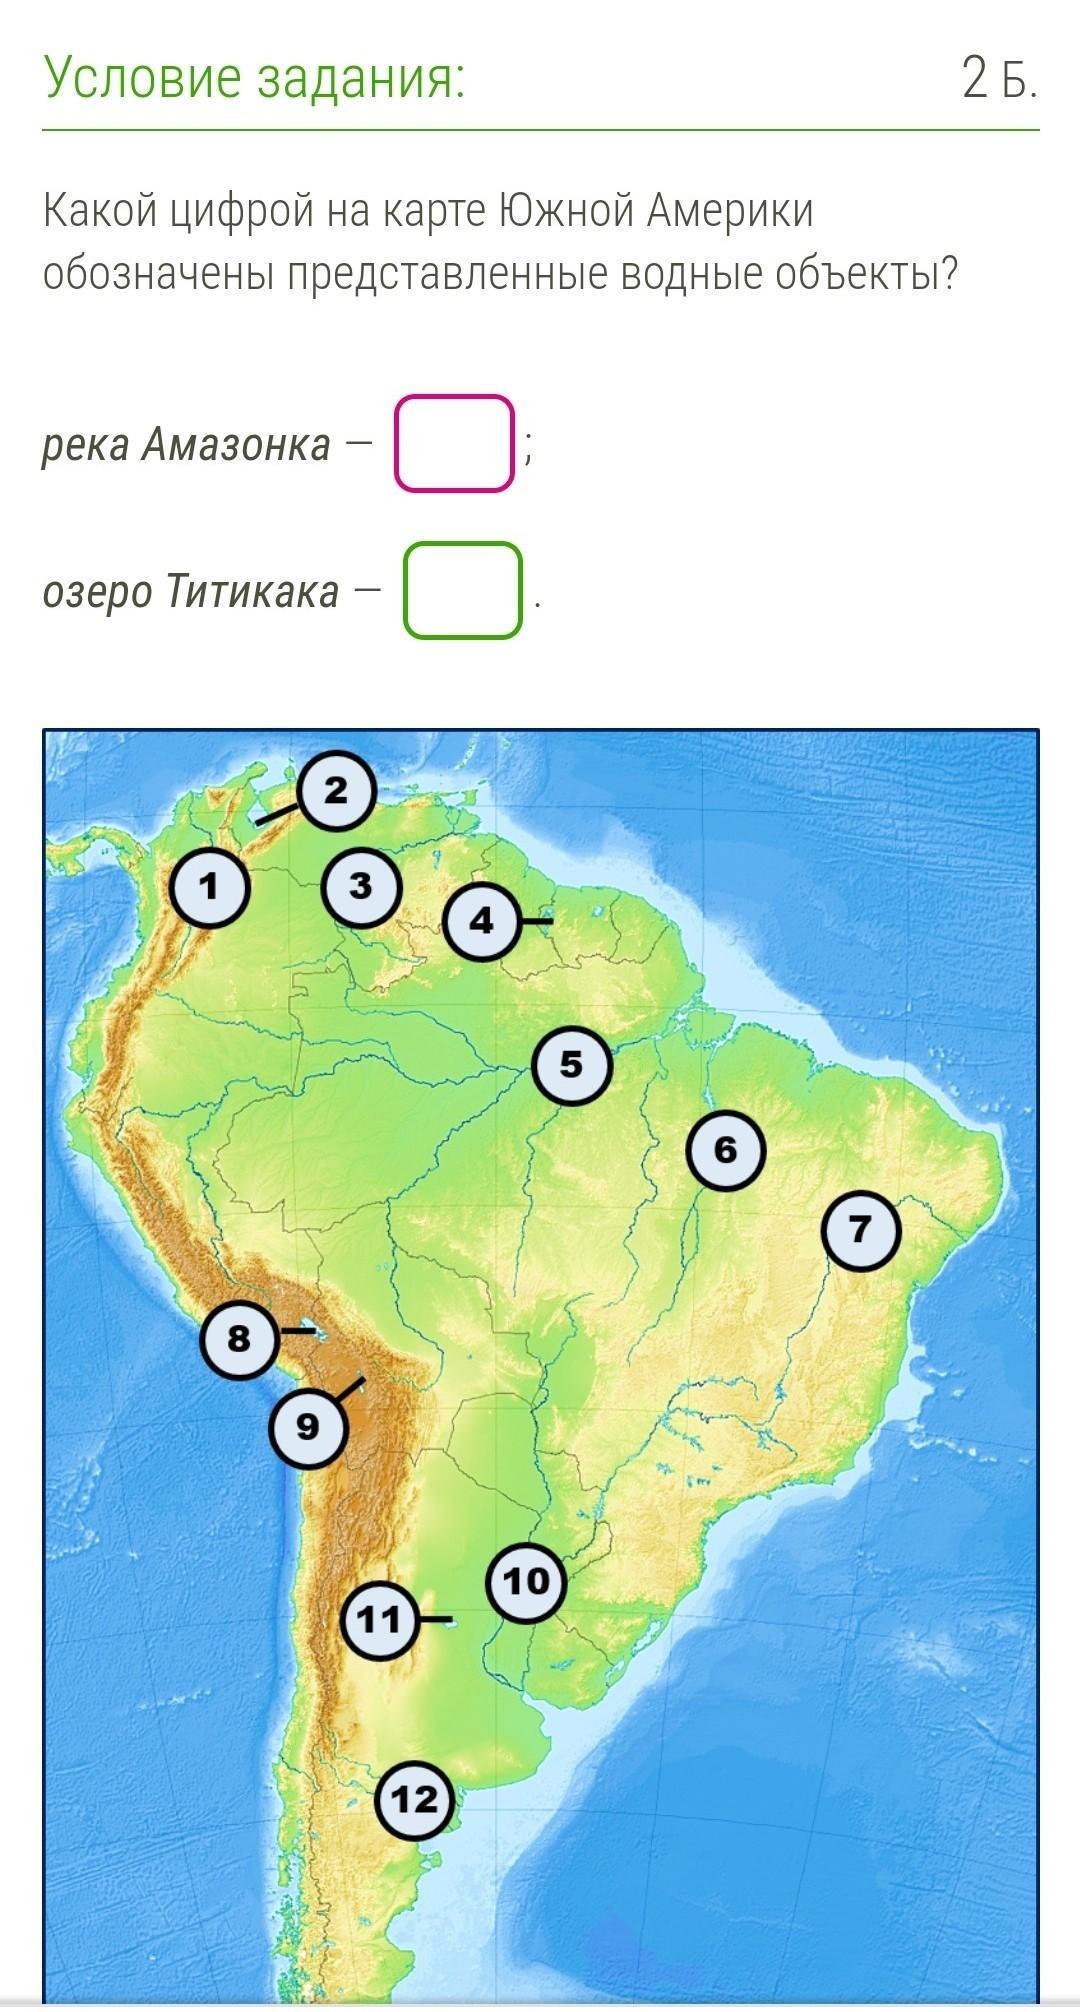 Водные объекты Южной Америки на карте